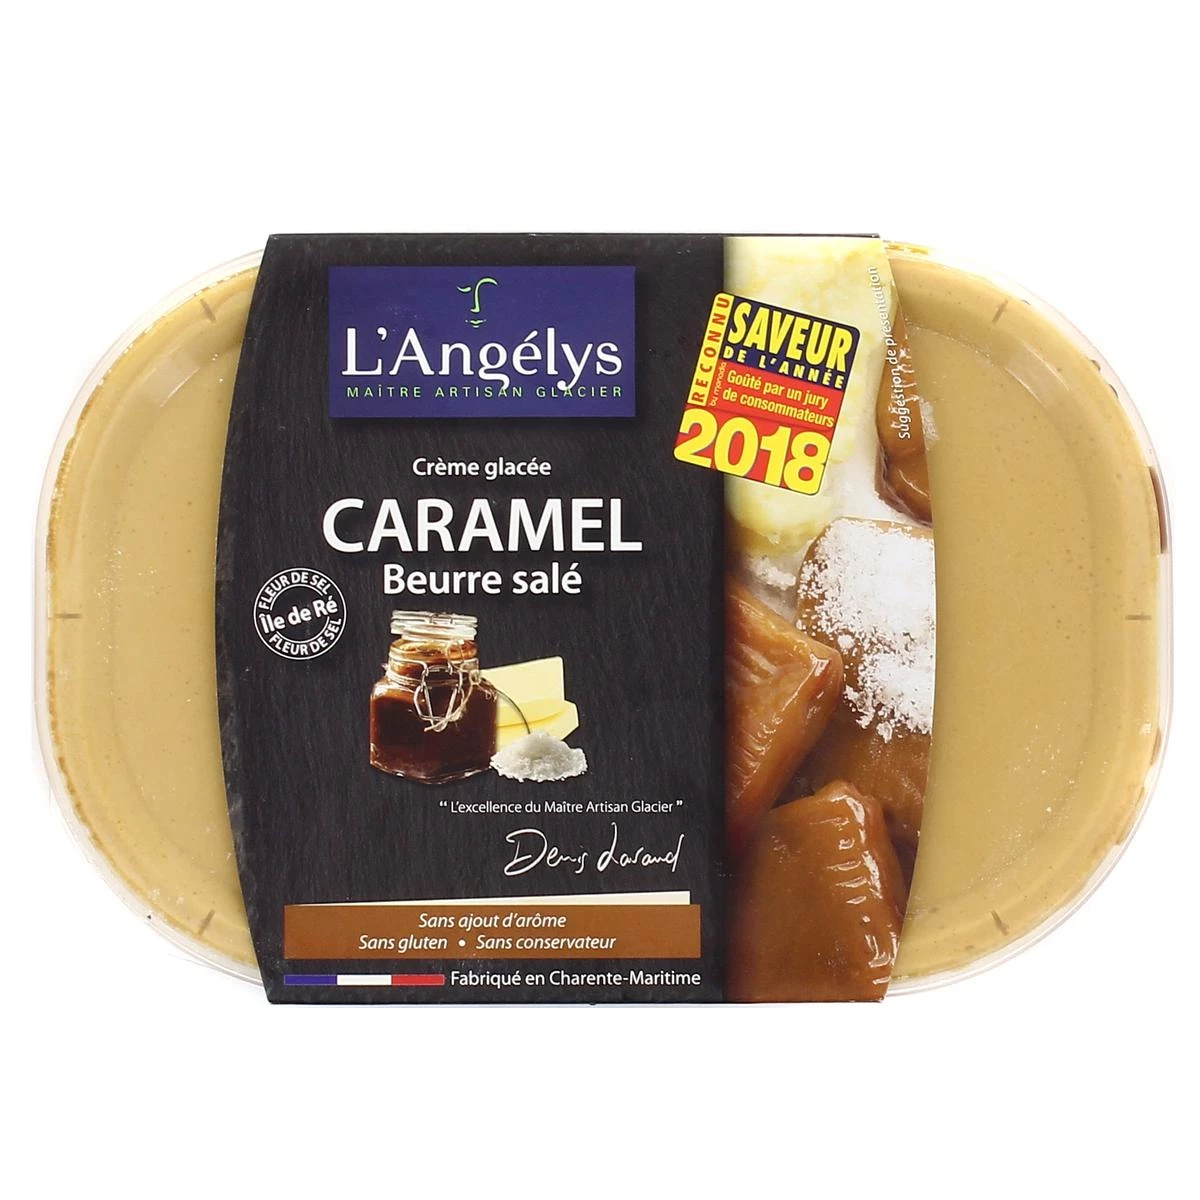 Crème glacé caramel beurre sale 450g - L'ANGÉLYS